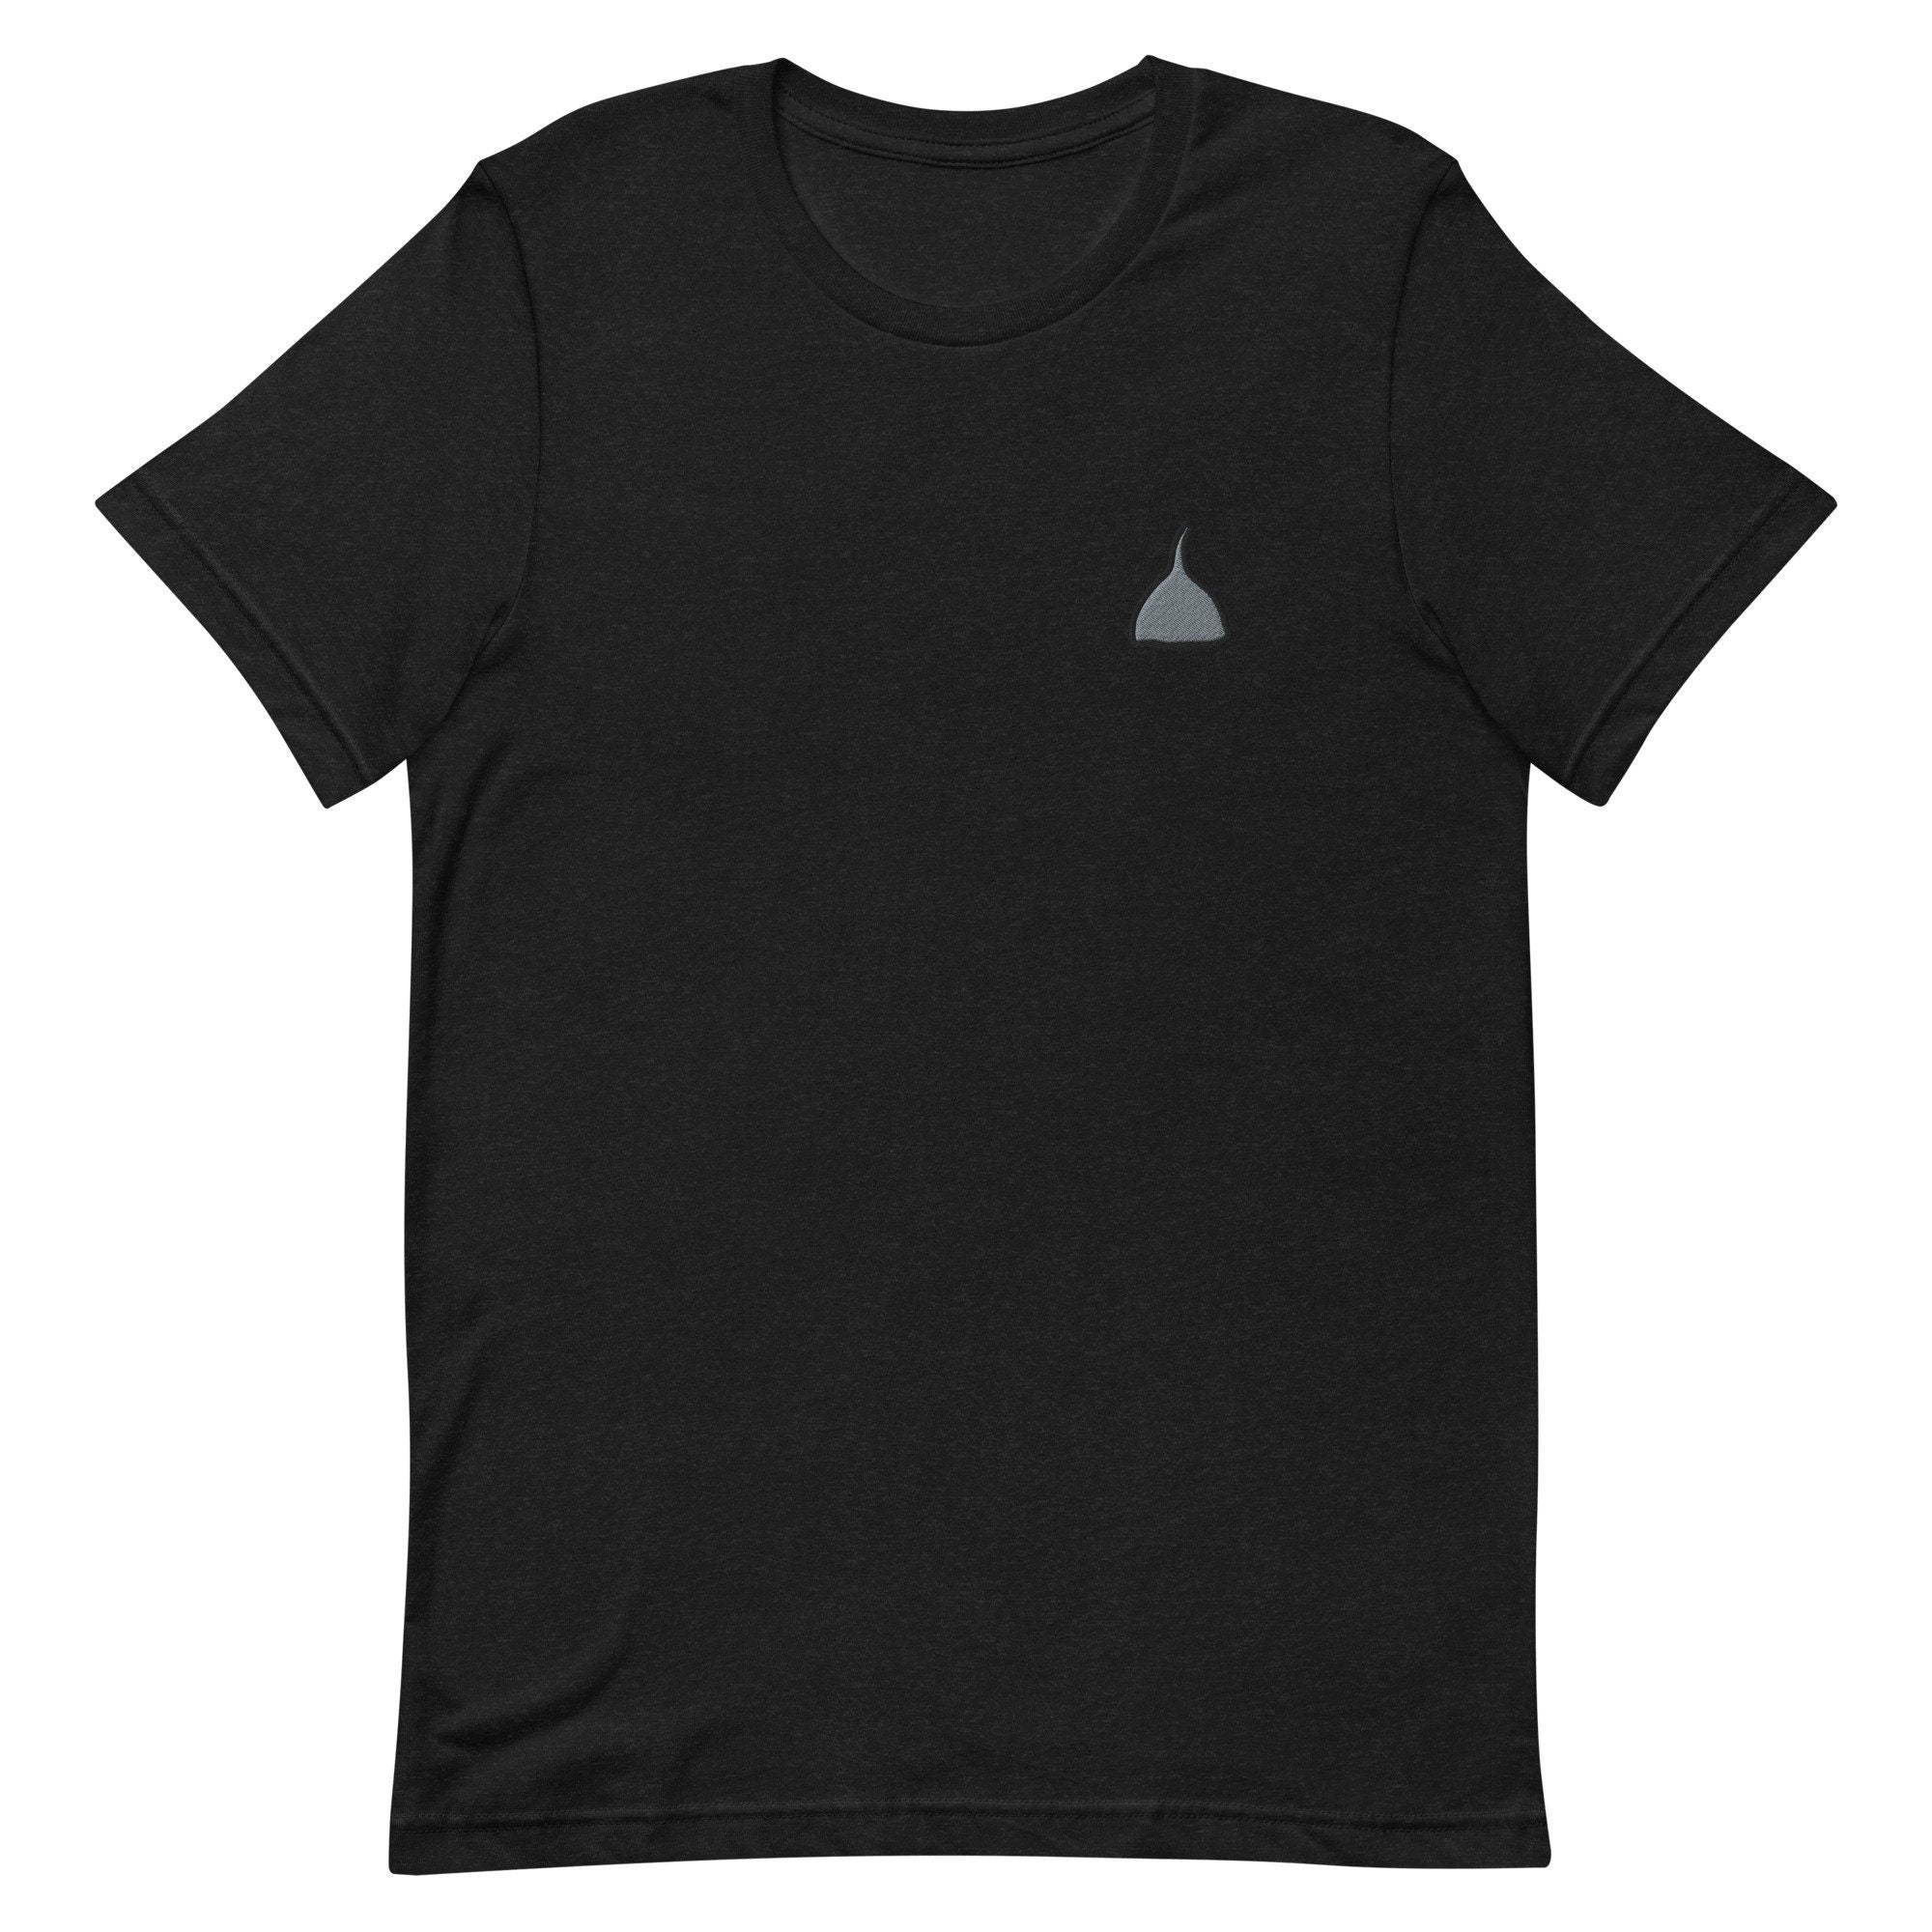 Tin Foil Hat Premium Men's T-Shirt, Embroidered Men's T-Shirt Gift for Boyfriend, Men's Short Sleeve Shirt - Multiple Colors